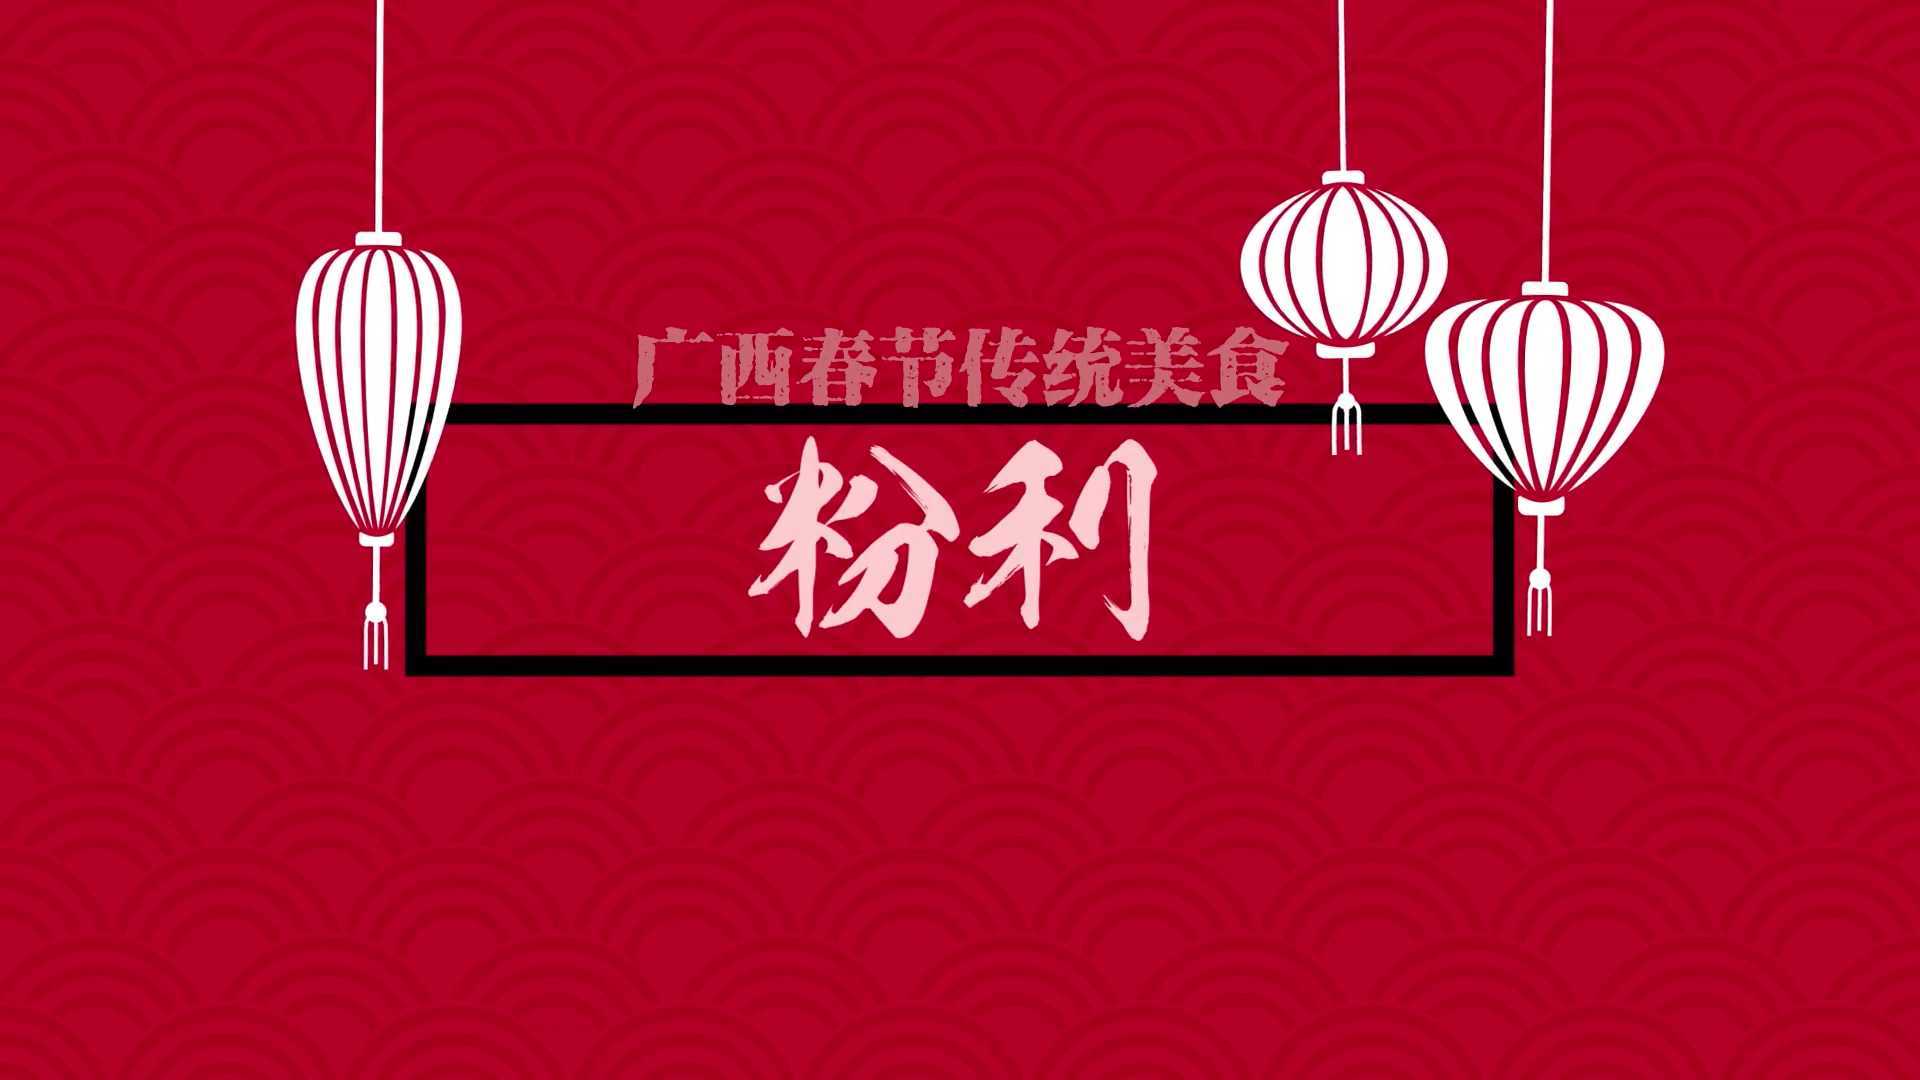 【微纪录片】广西春节传统美食——粉利